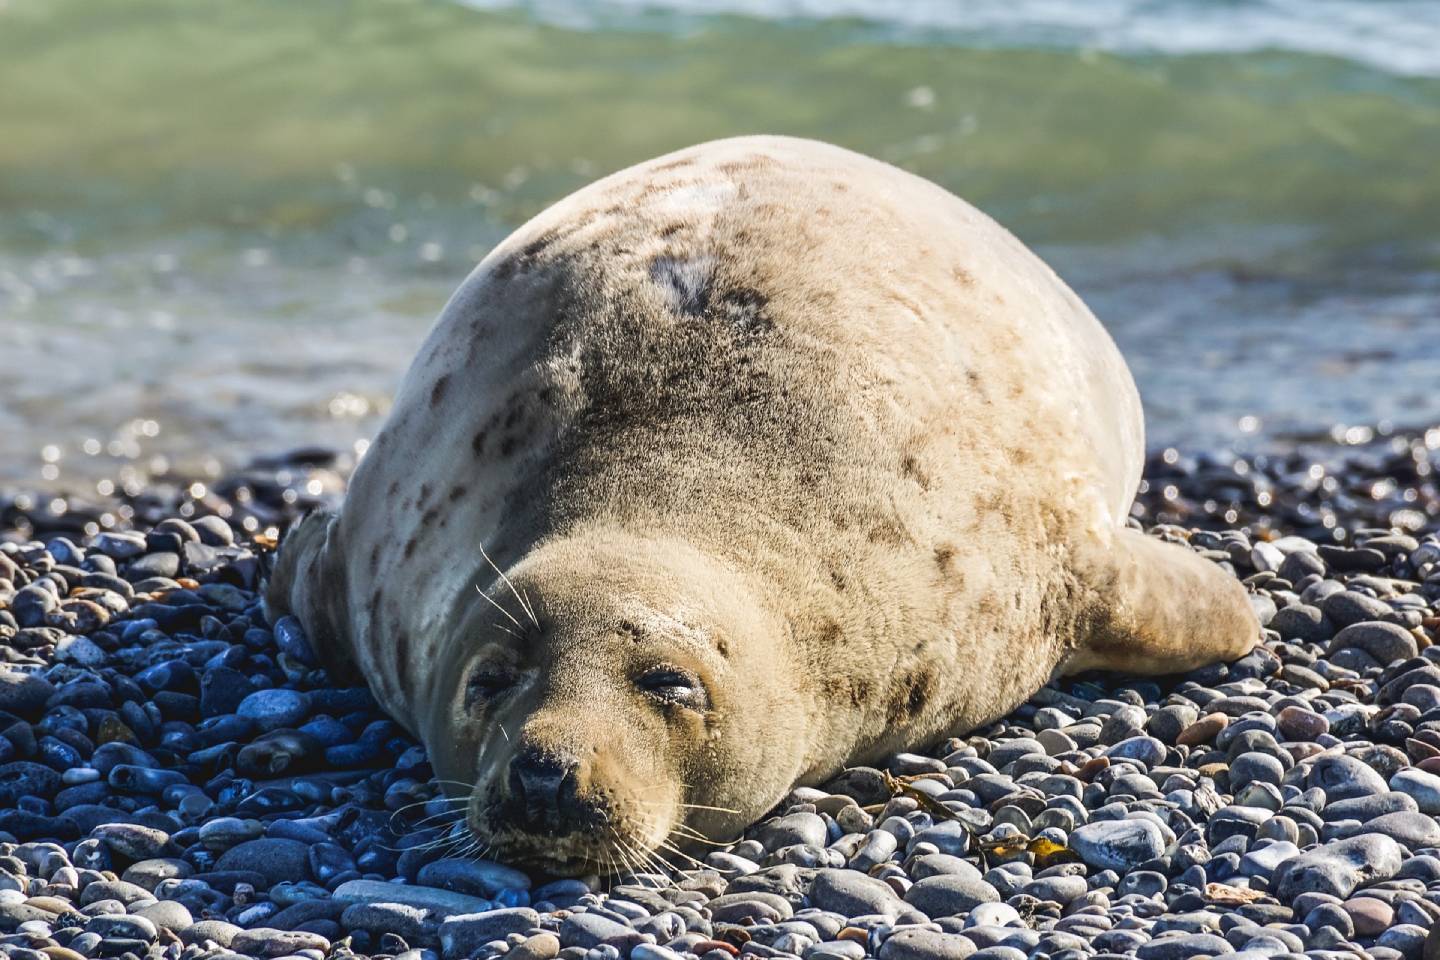 Новости мира / Интересные новости / Вирусы: почему тюлени погибали на Каспии, рассказала министр экологии РК